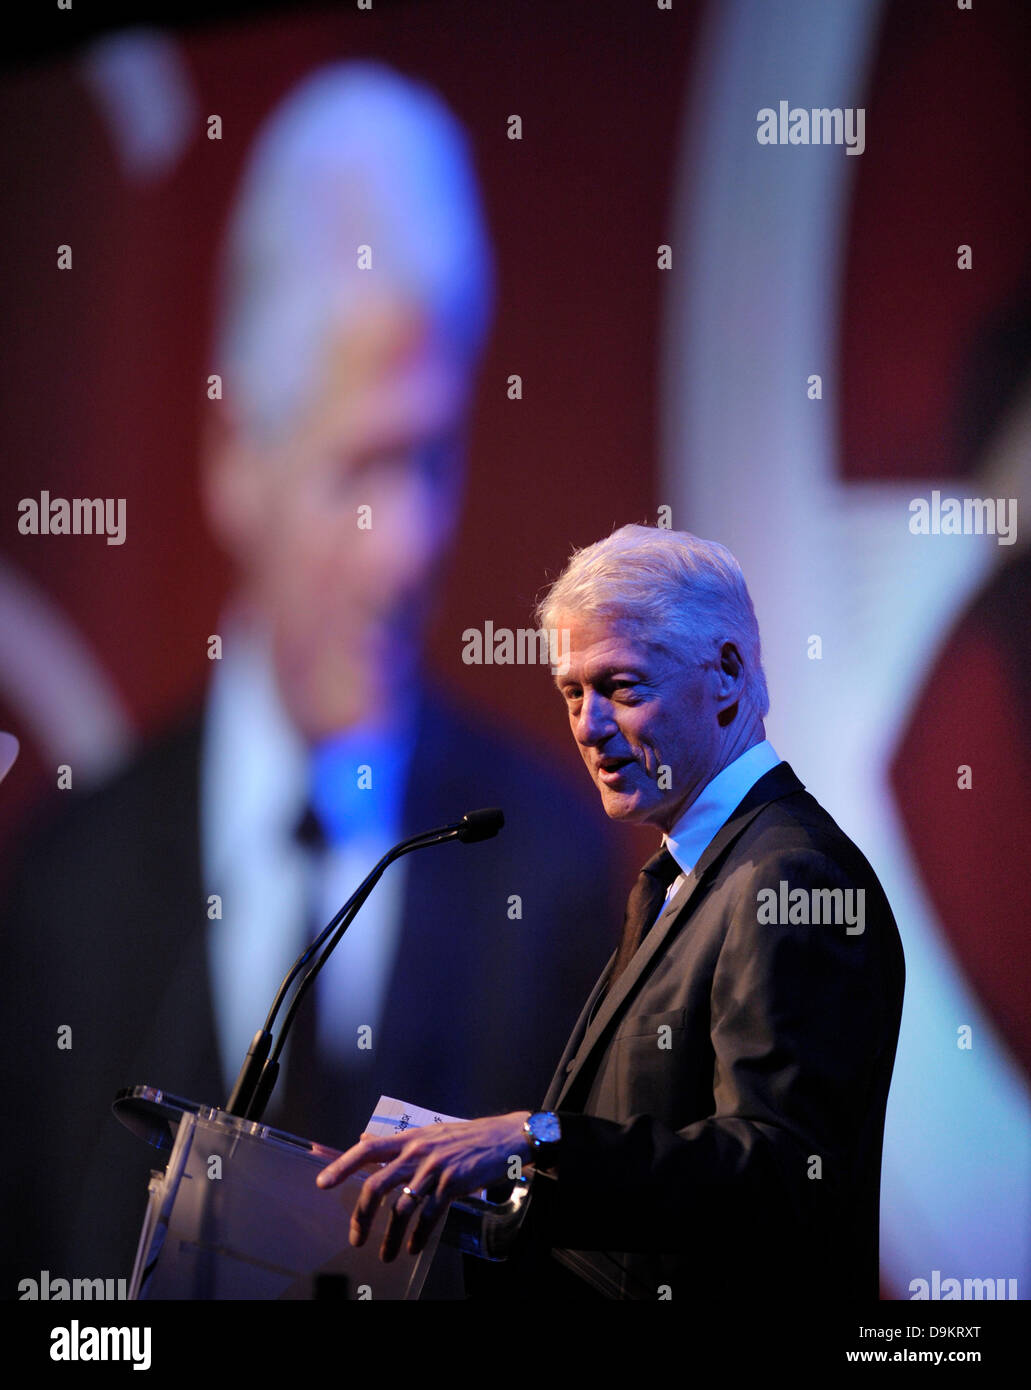 Die schottischen Business Awards an der EICC Edinburgh.  Abgebildete Keynote Speaker Ex-Präsident der USA Bill Clinton auf der Bühne. Stockfoto